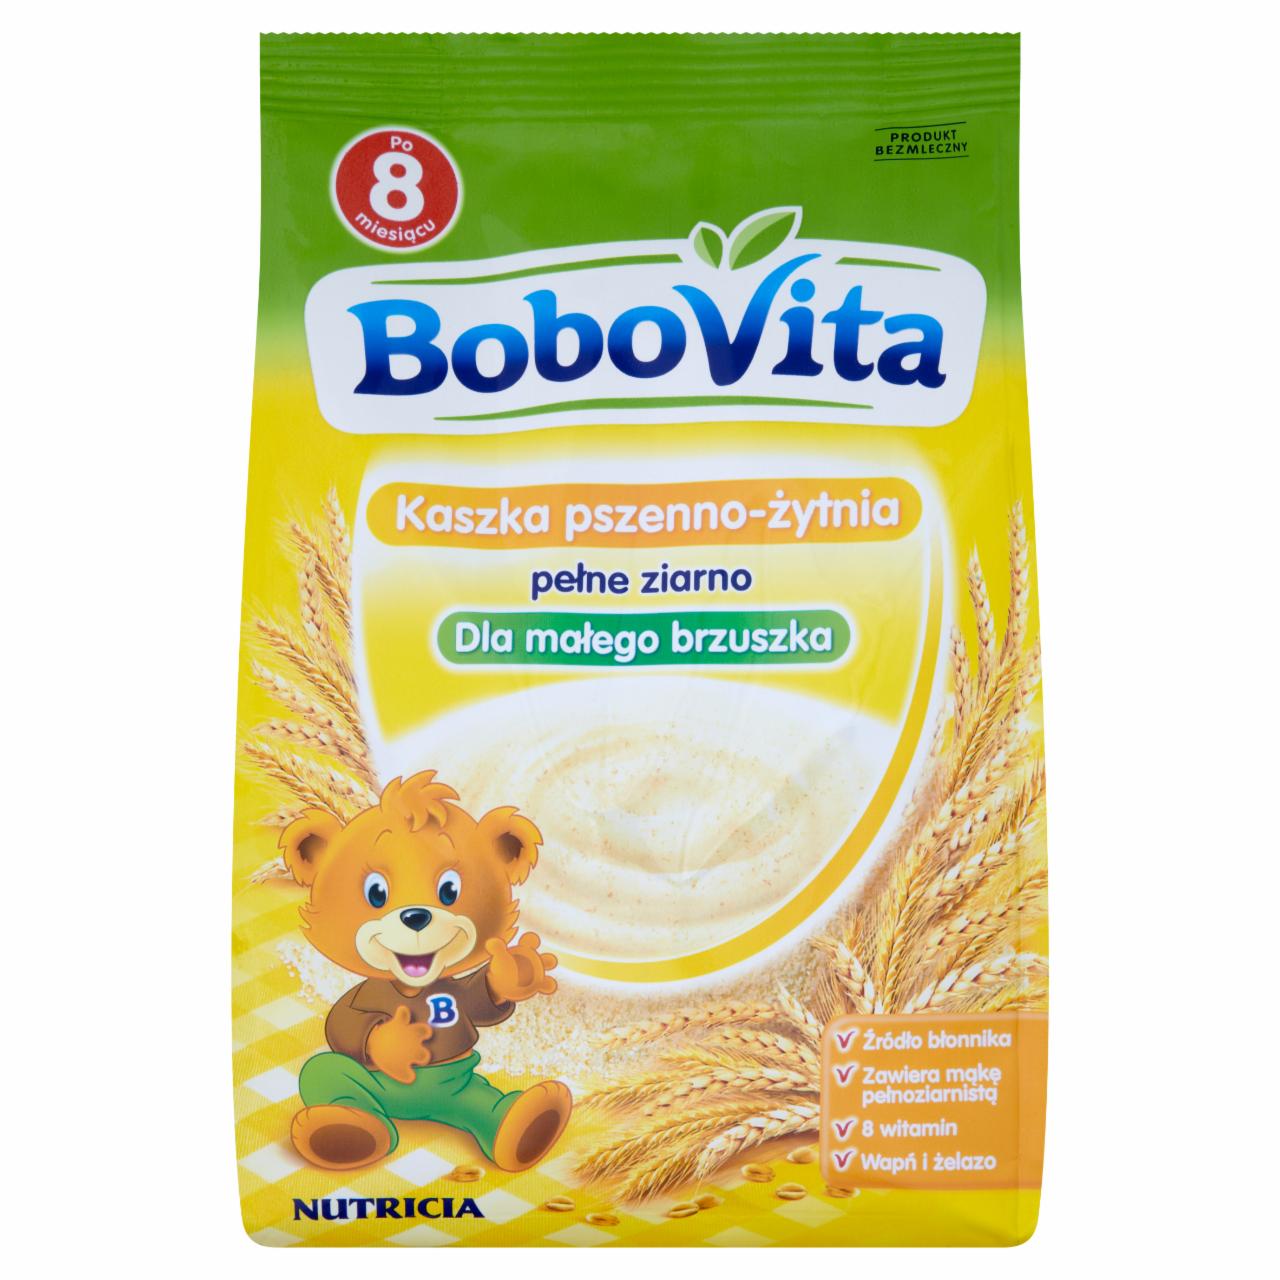 Zdjęcia - BoboVita Dla małego brzuszka Kaszka pszenno-żytnia pełne ziarno po 8 miesiącu 180 g